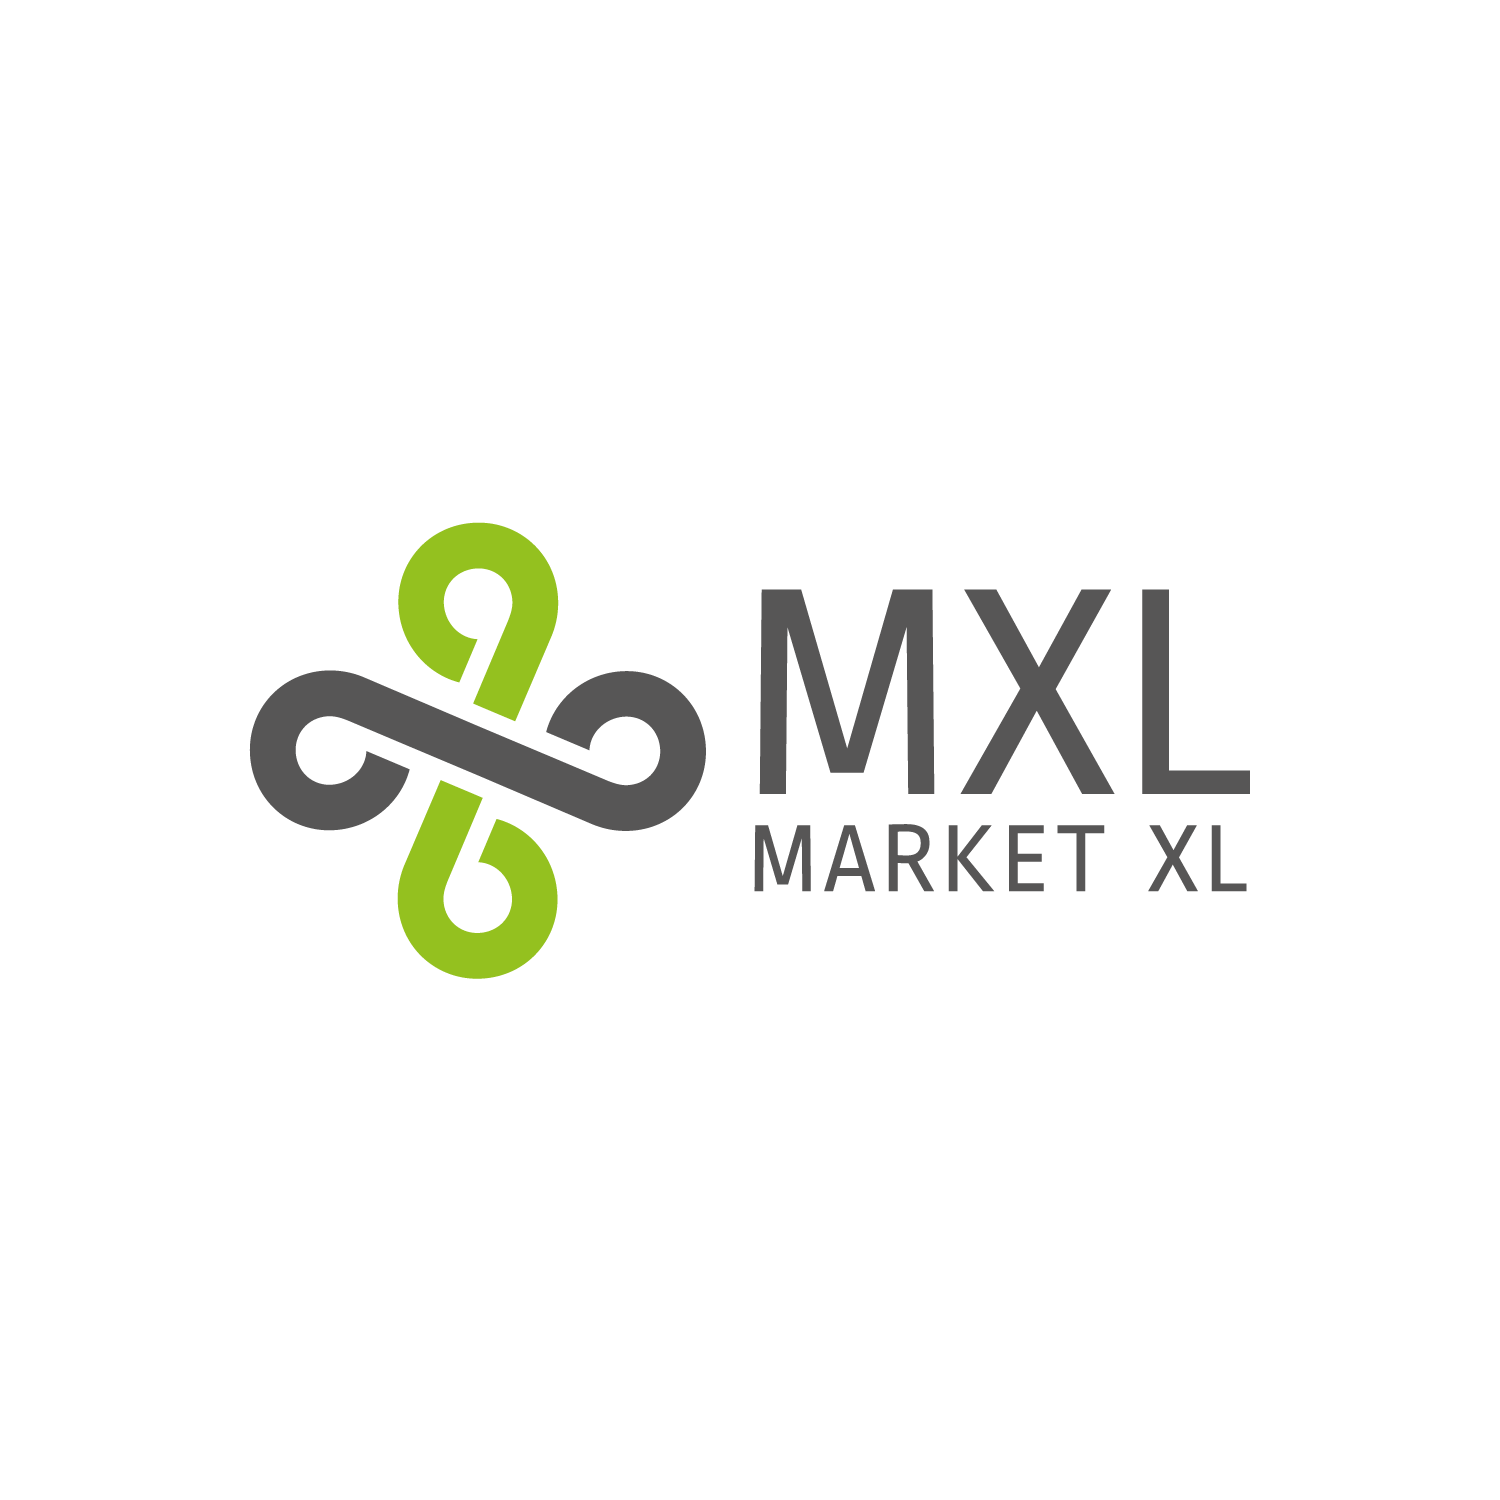 MarketXL